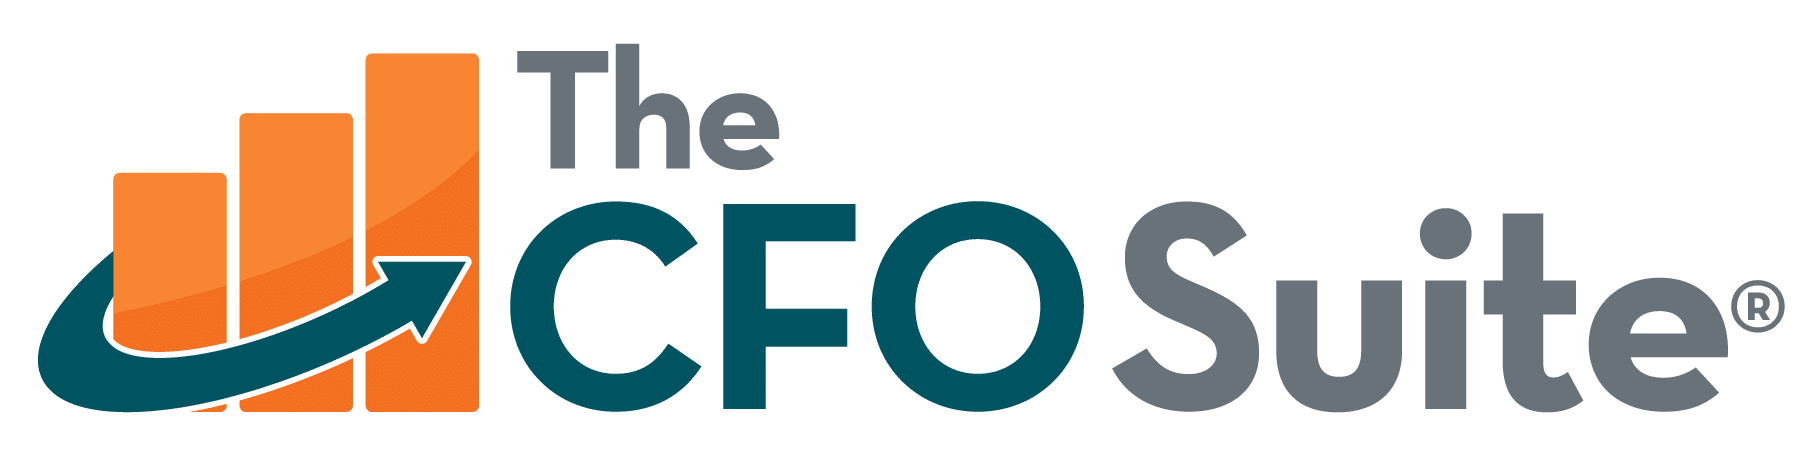 The CFO Suite logo